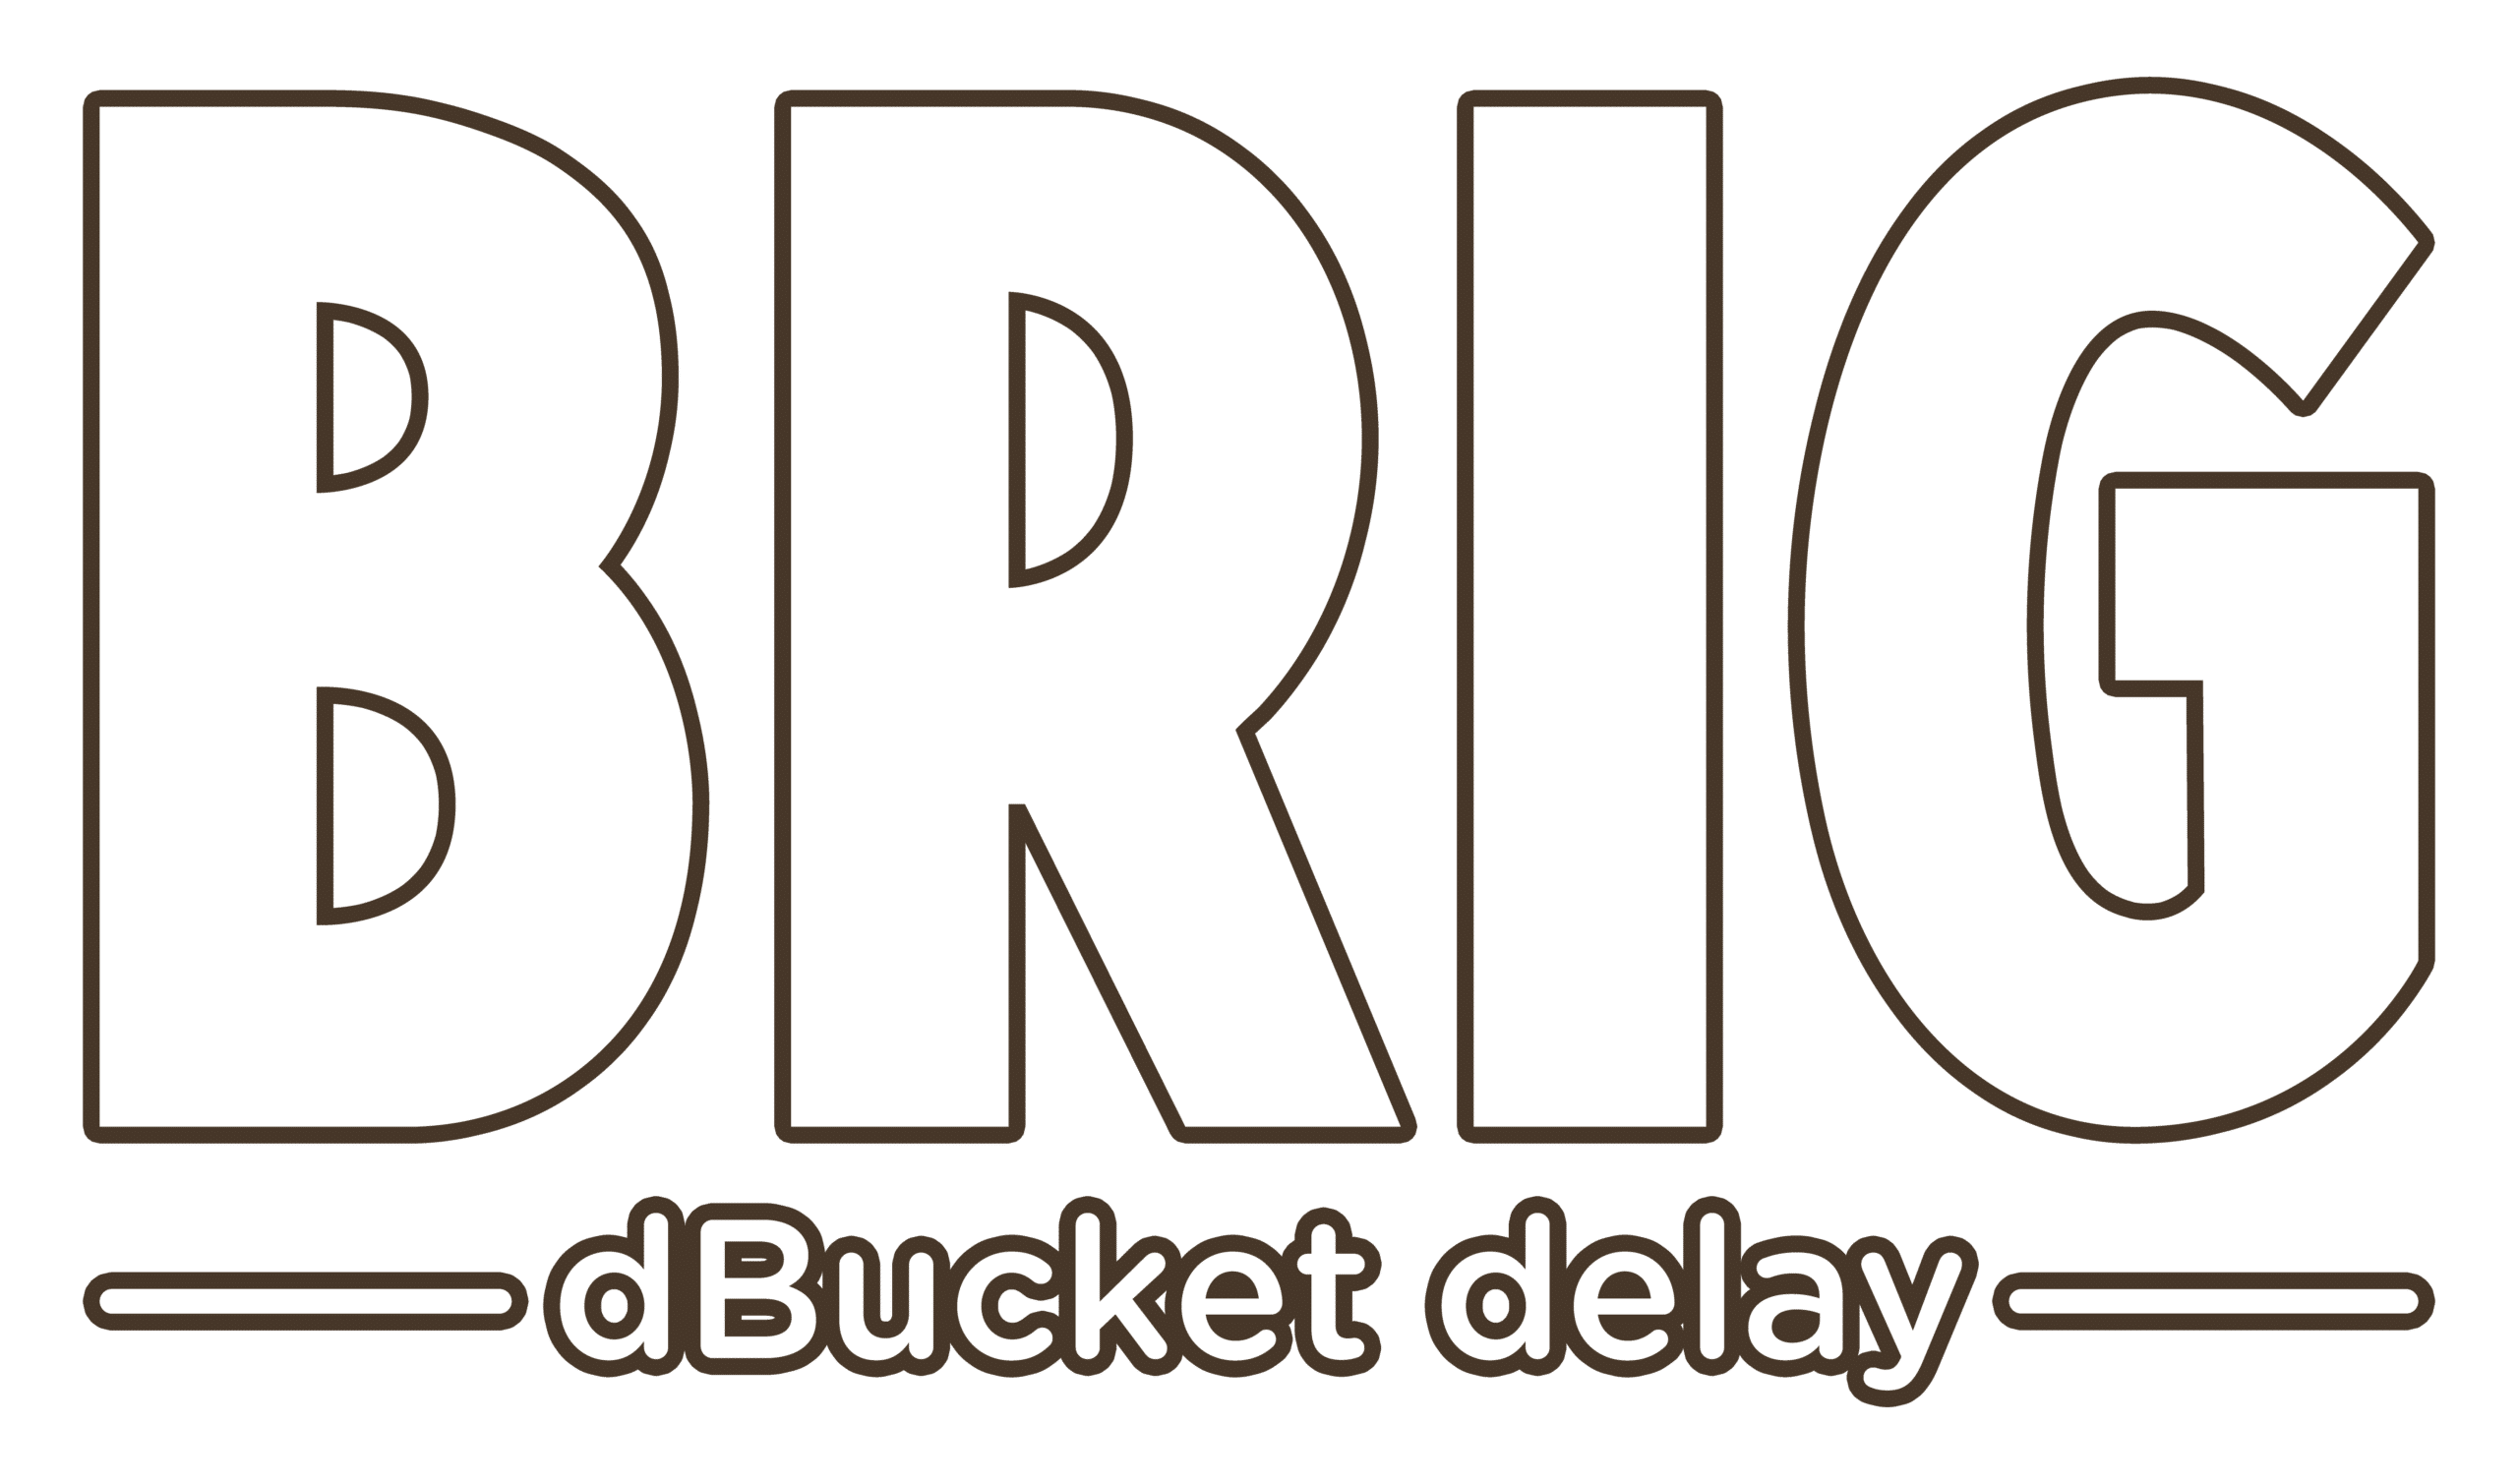 Brig dBucket Delay Logo